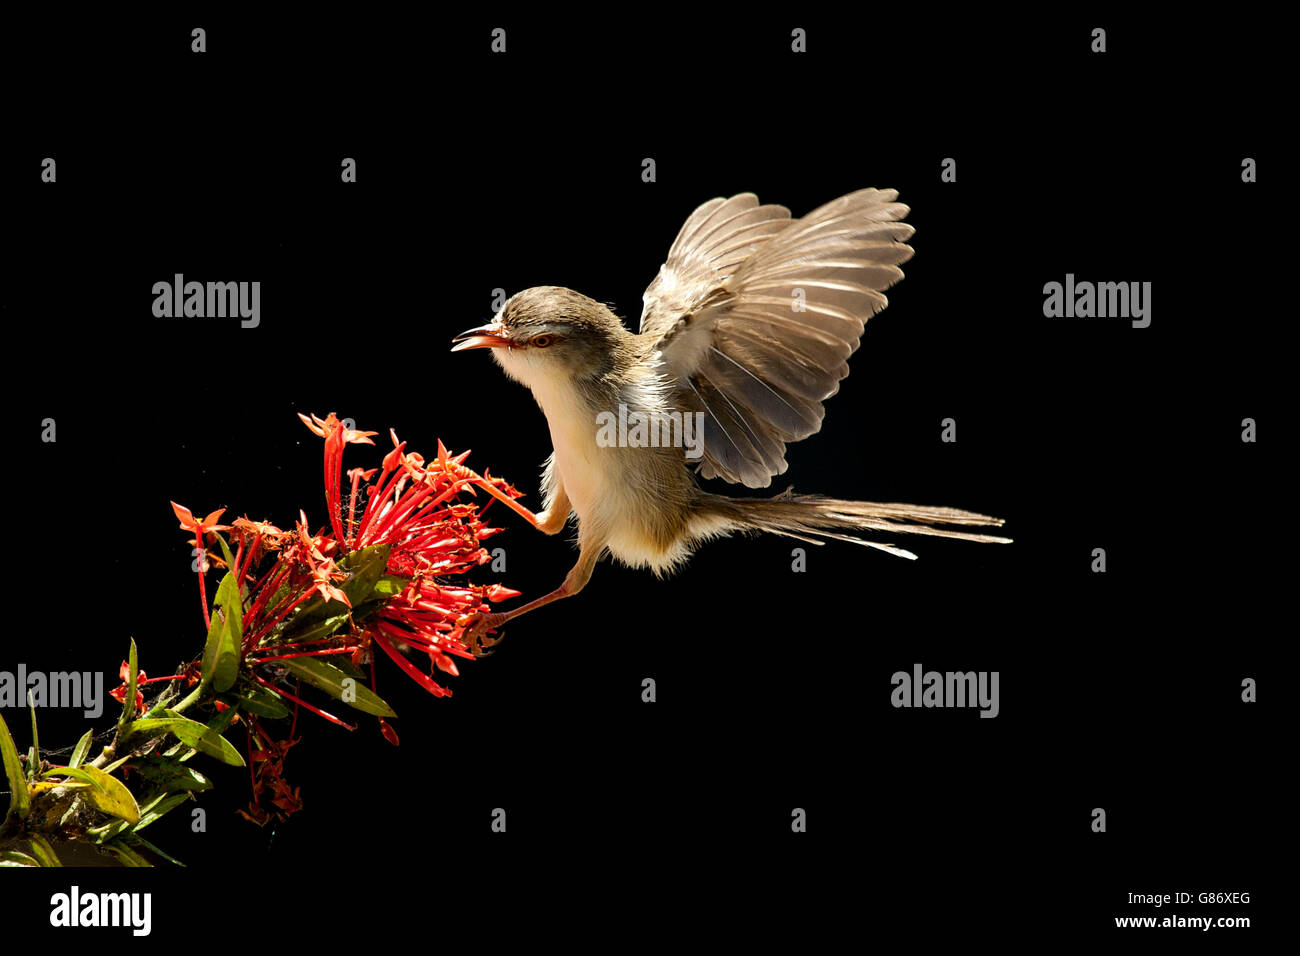 Bird landing on flower, Jember, Indonesia Stock Photo